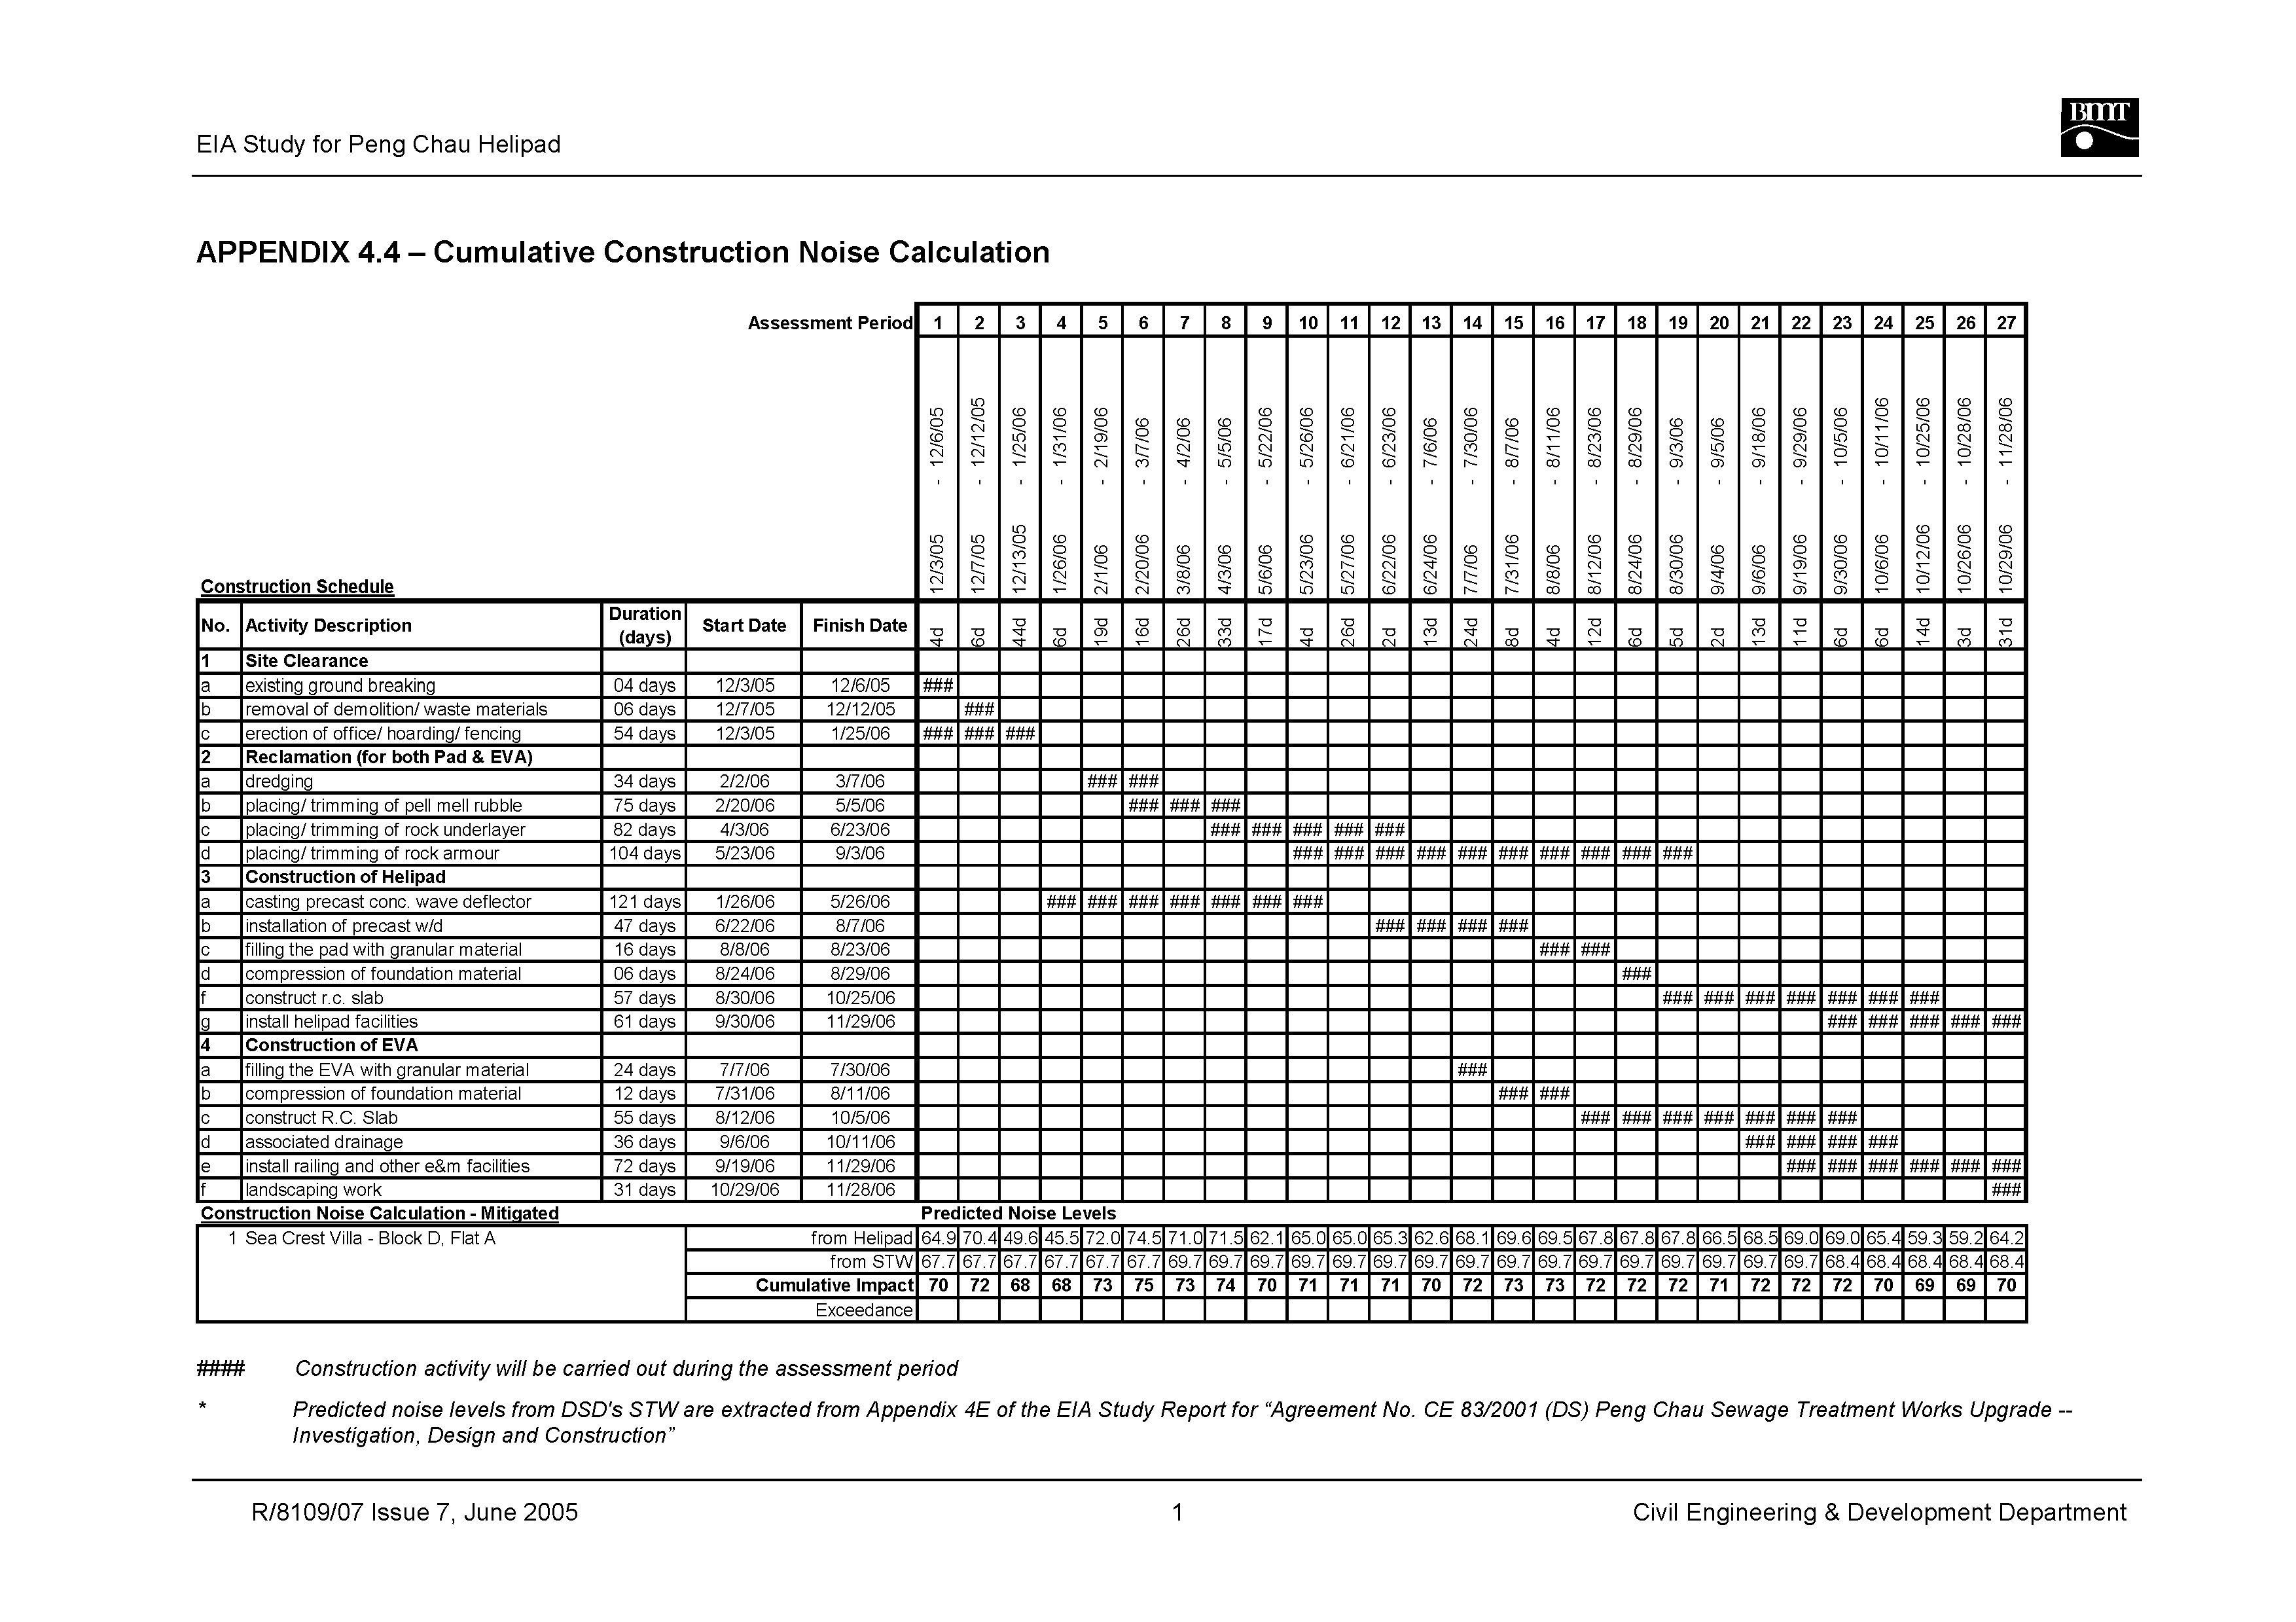 Noise survey report template